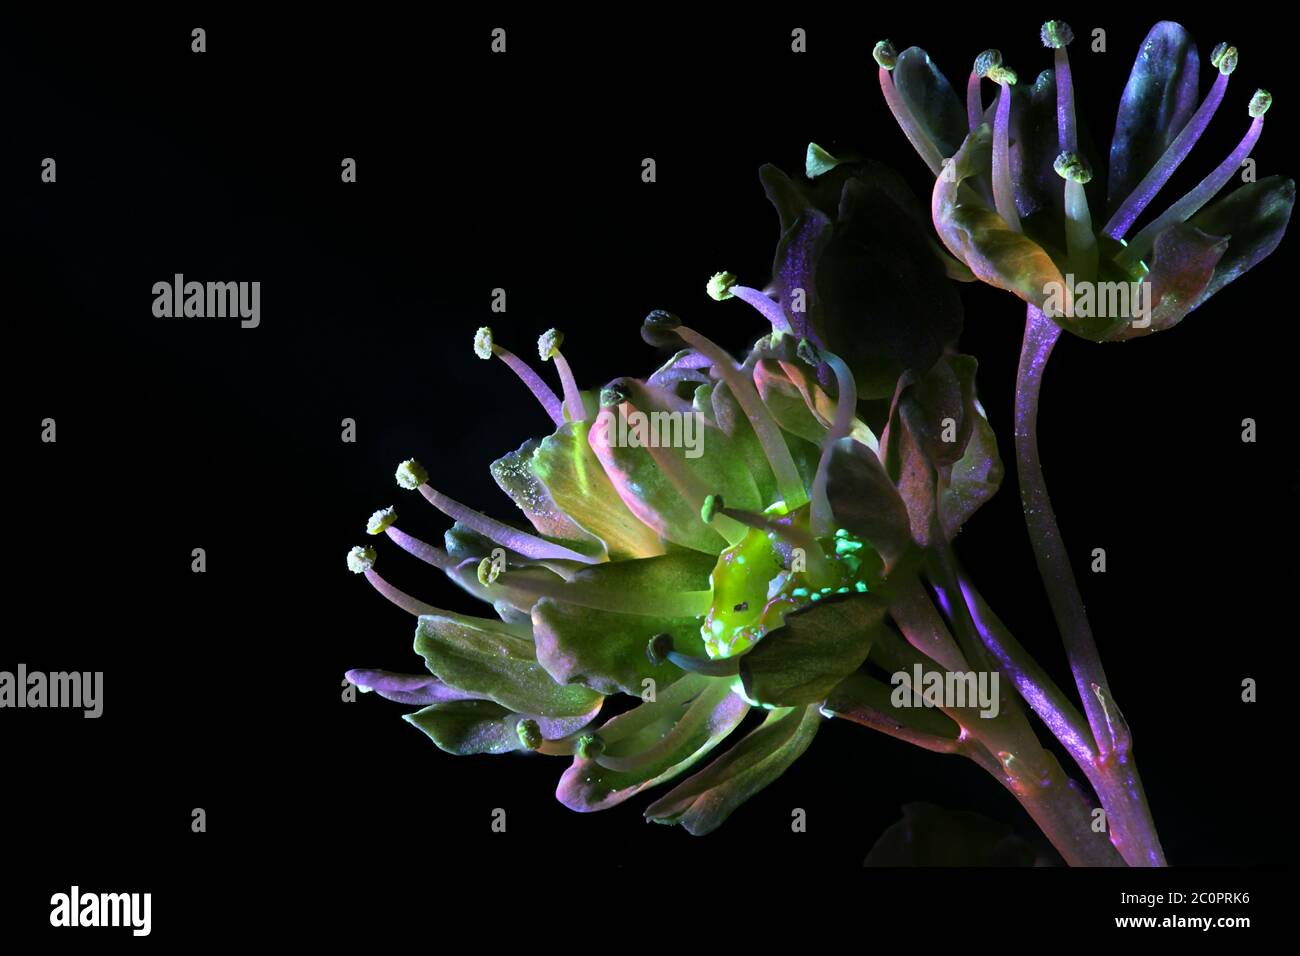 Boutons floraux de l'érable de Norvège, Acer platanoides, photographiés dans des rayons ultraviolets (365 nm) Banque D'Images